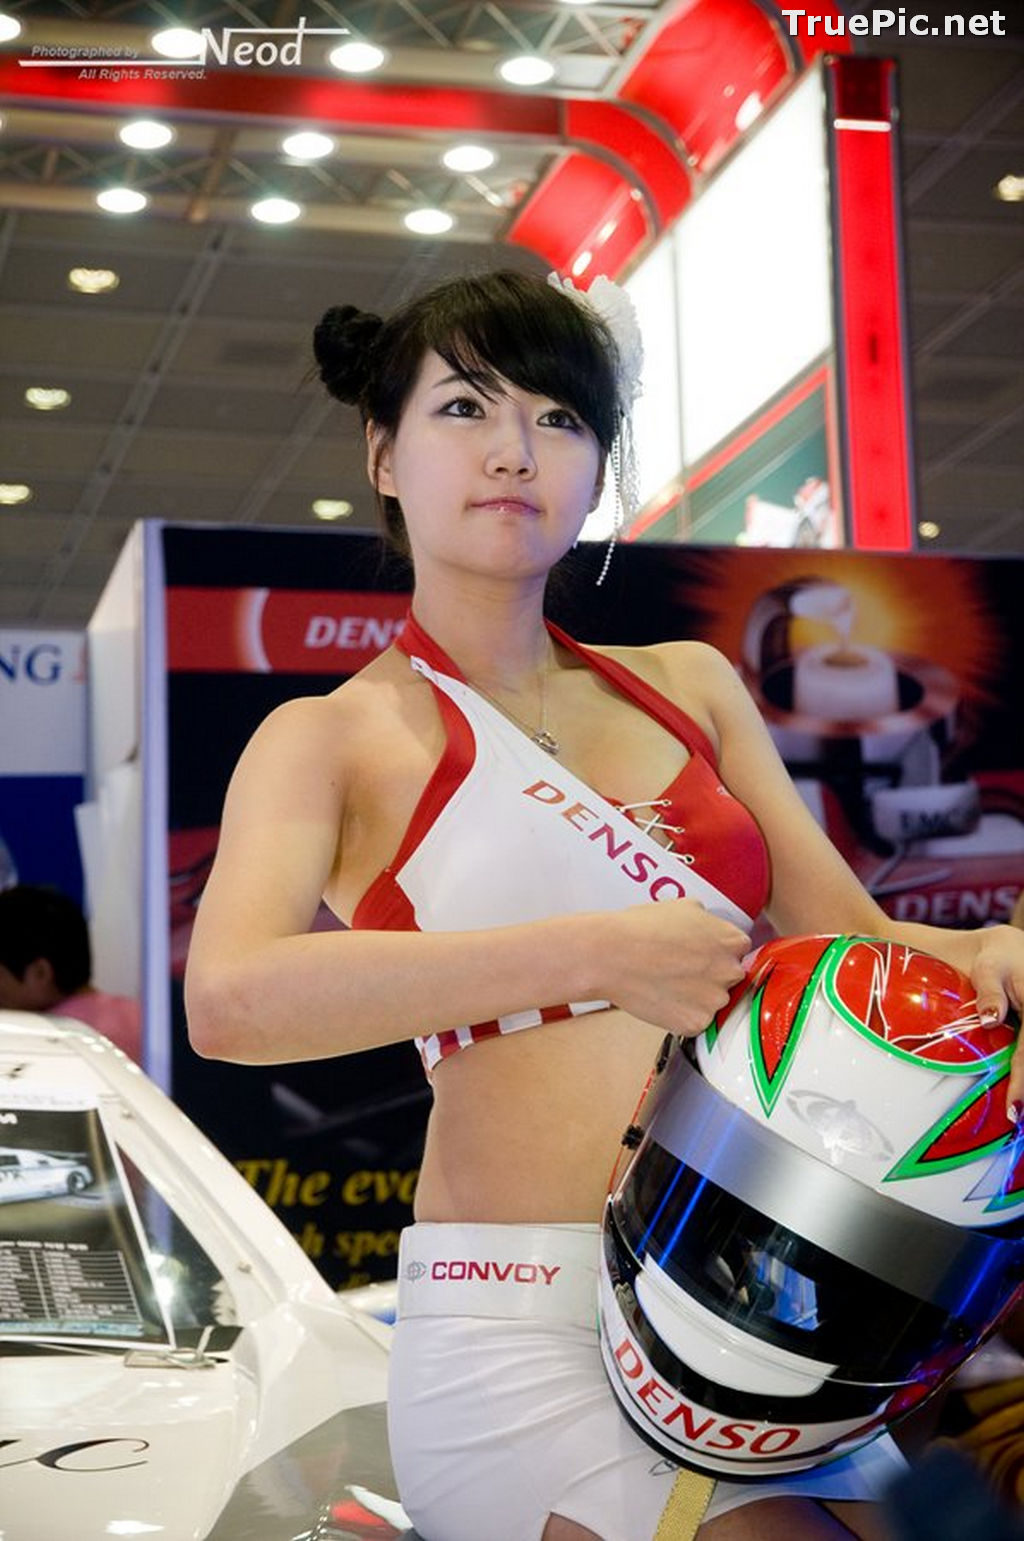 Image Best Beautiful Images Of Korean Racing Queen Han Ga Eun #4 - TruePic.net - Picture-40